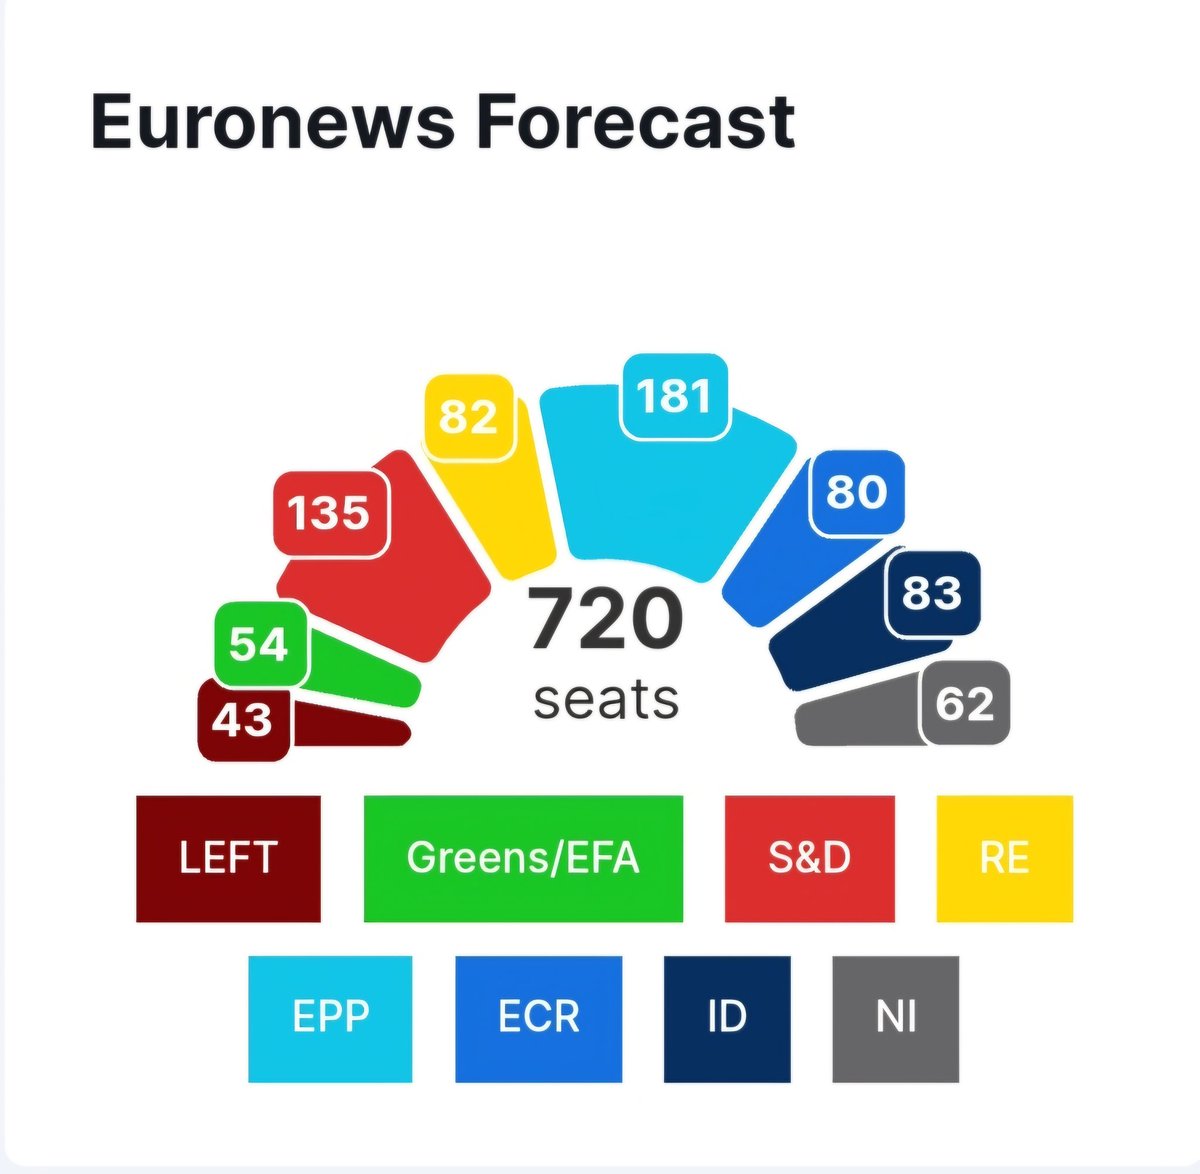 Les dernières projections du Centre de sondage européen donnent en France :
⚫️ RN : 28 députés
🟡 Renaissance : 16
🔴 PS : 11
🔵 LR : 7
🟤 LFI : 7
⚪️ Rec : 6
🟢 Les Verts : 6

En Europe :
🔵 PPE : 181
🔴 S&D : 135
⚫️ ID : 83
🟡 Renew : 82
⚪️ ECR : 80
🟢 Greens : 54
🟤 Left : 43